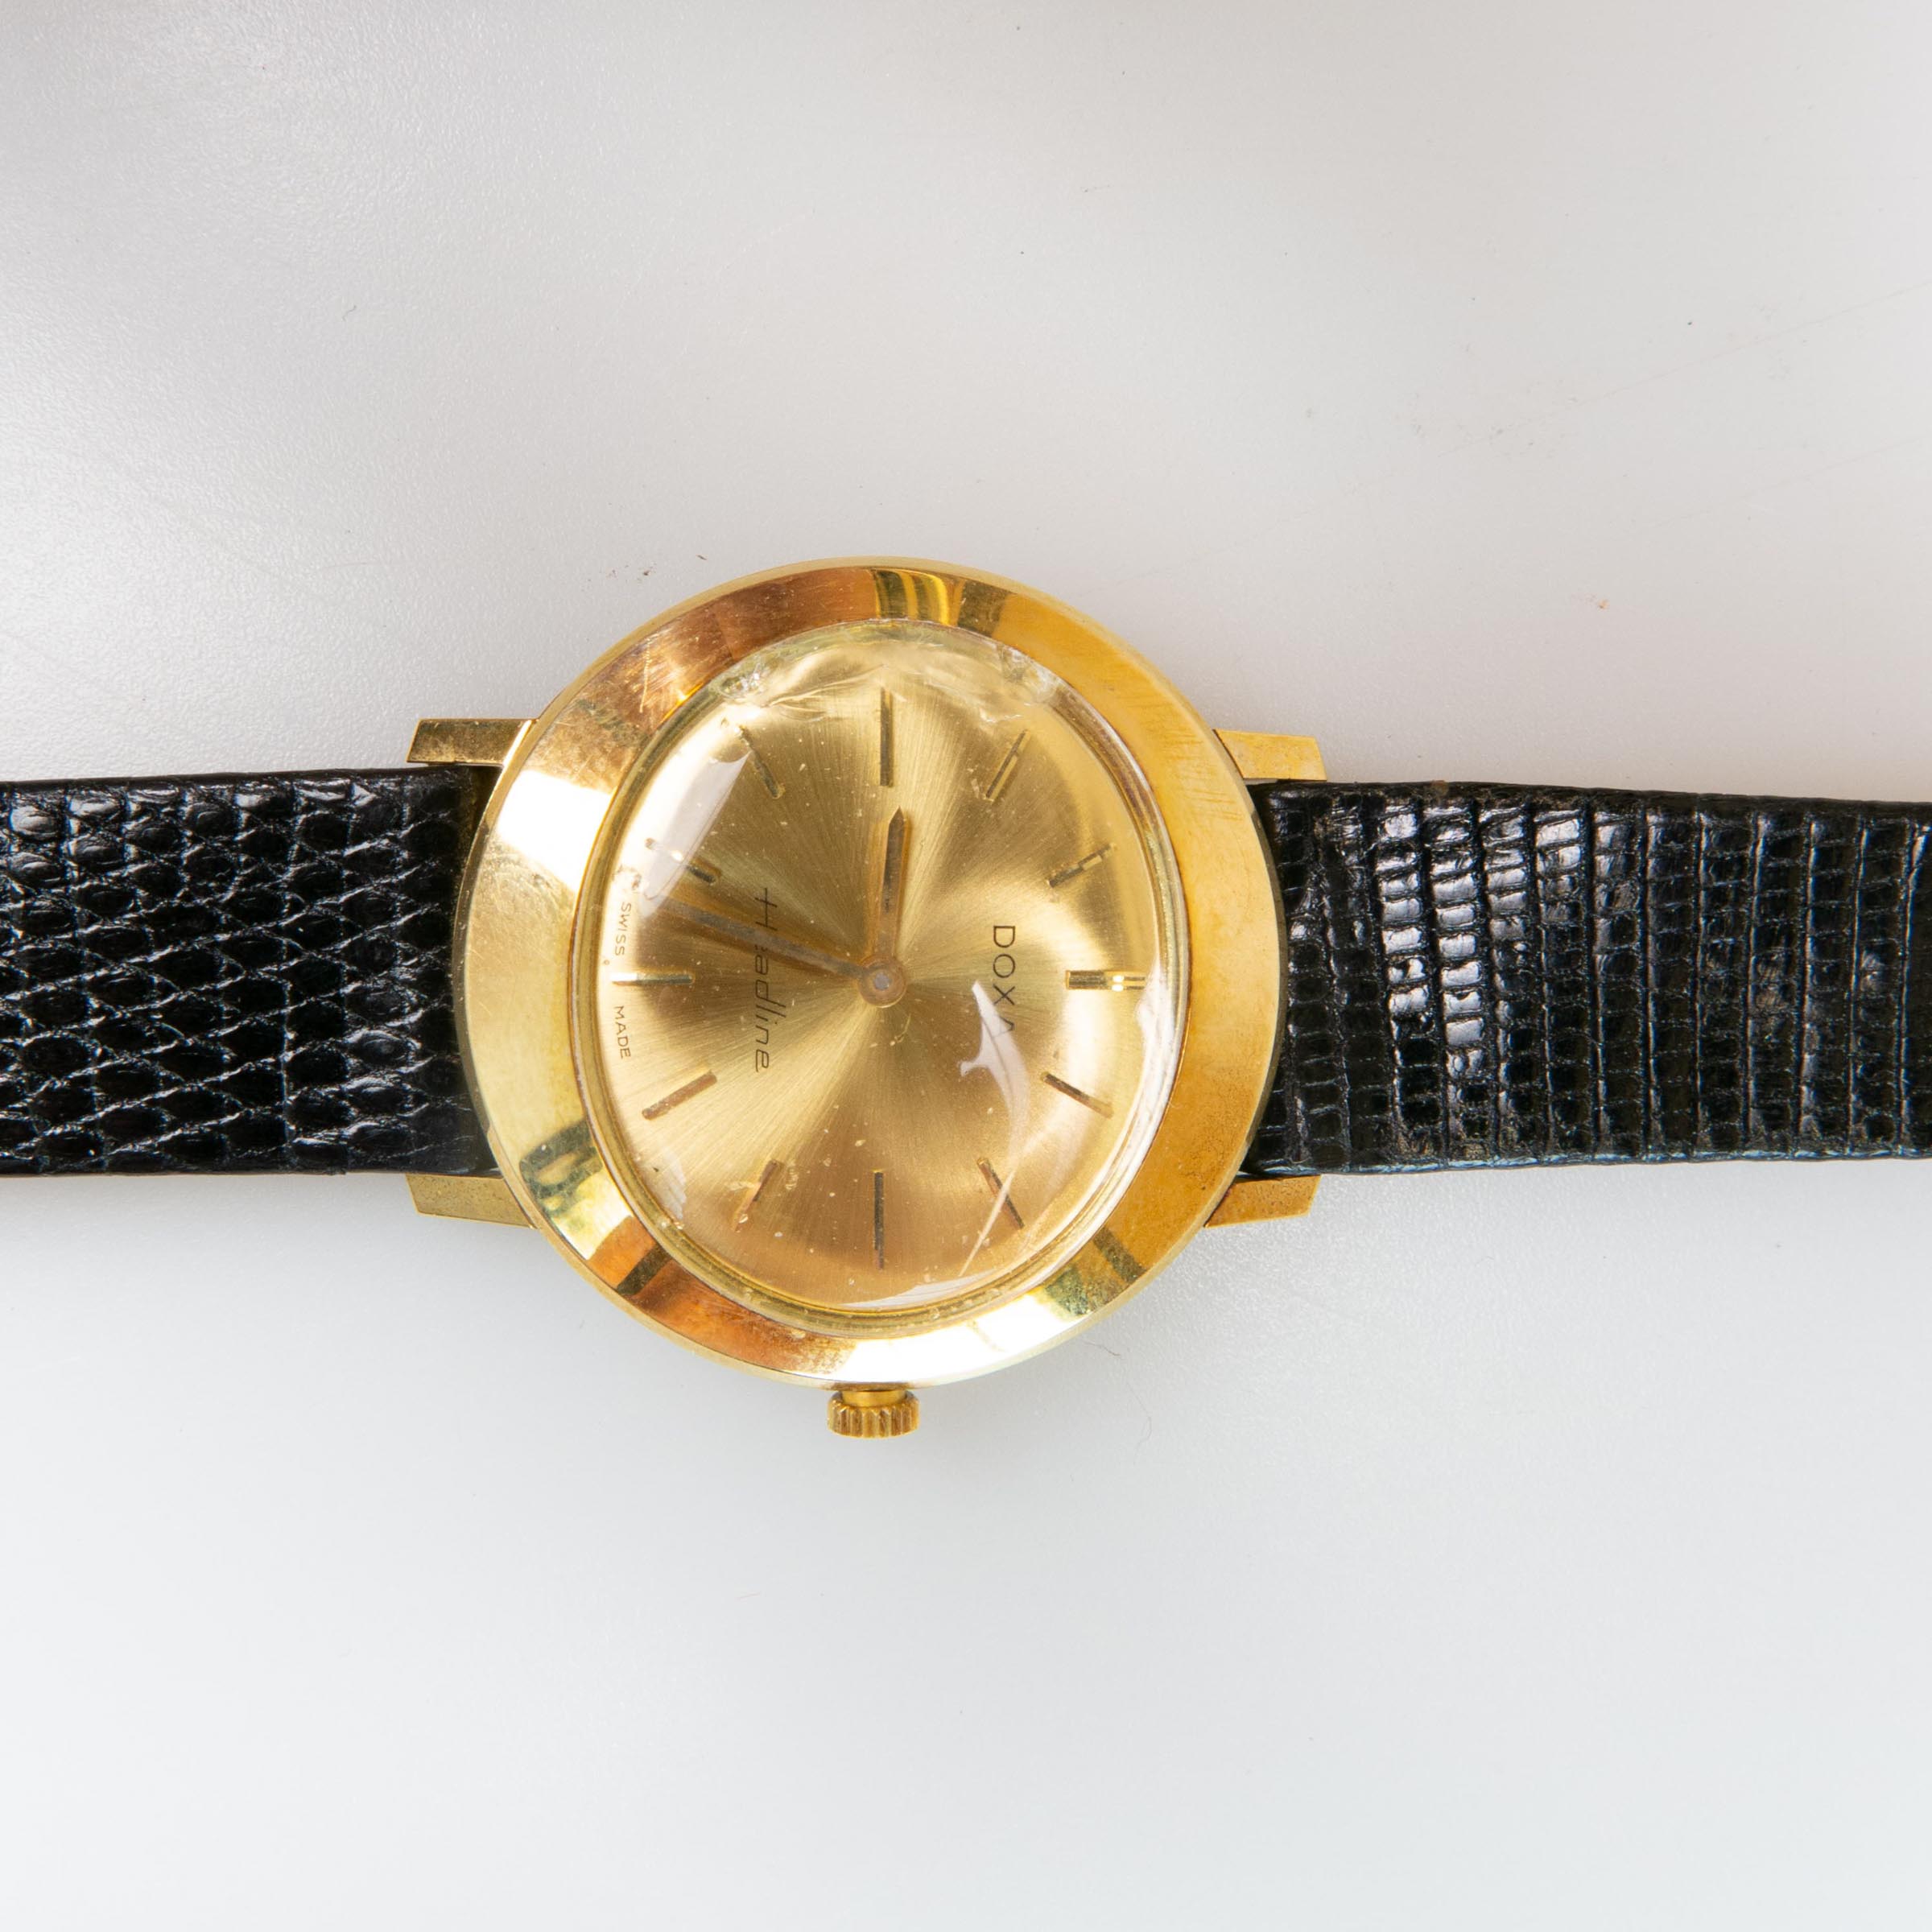 Doxa 'Headline' Wristwatch